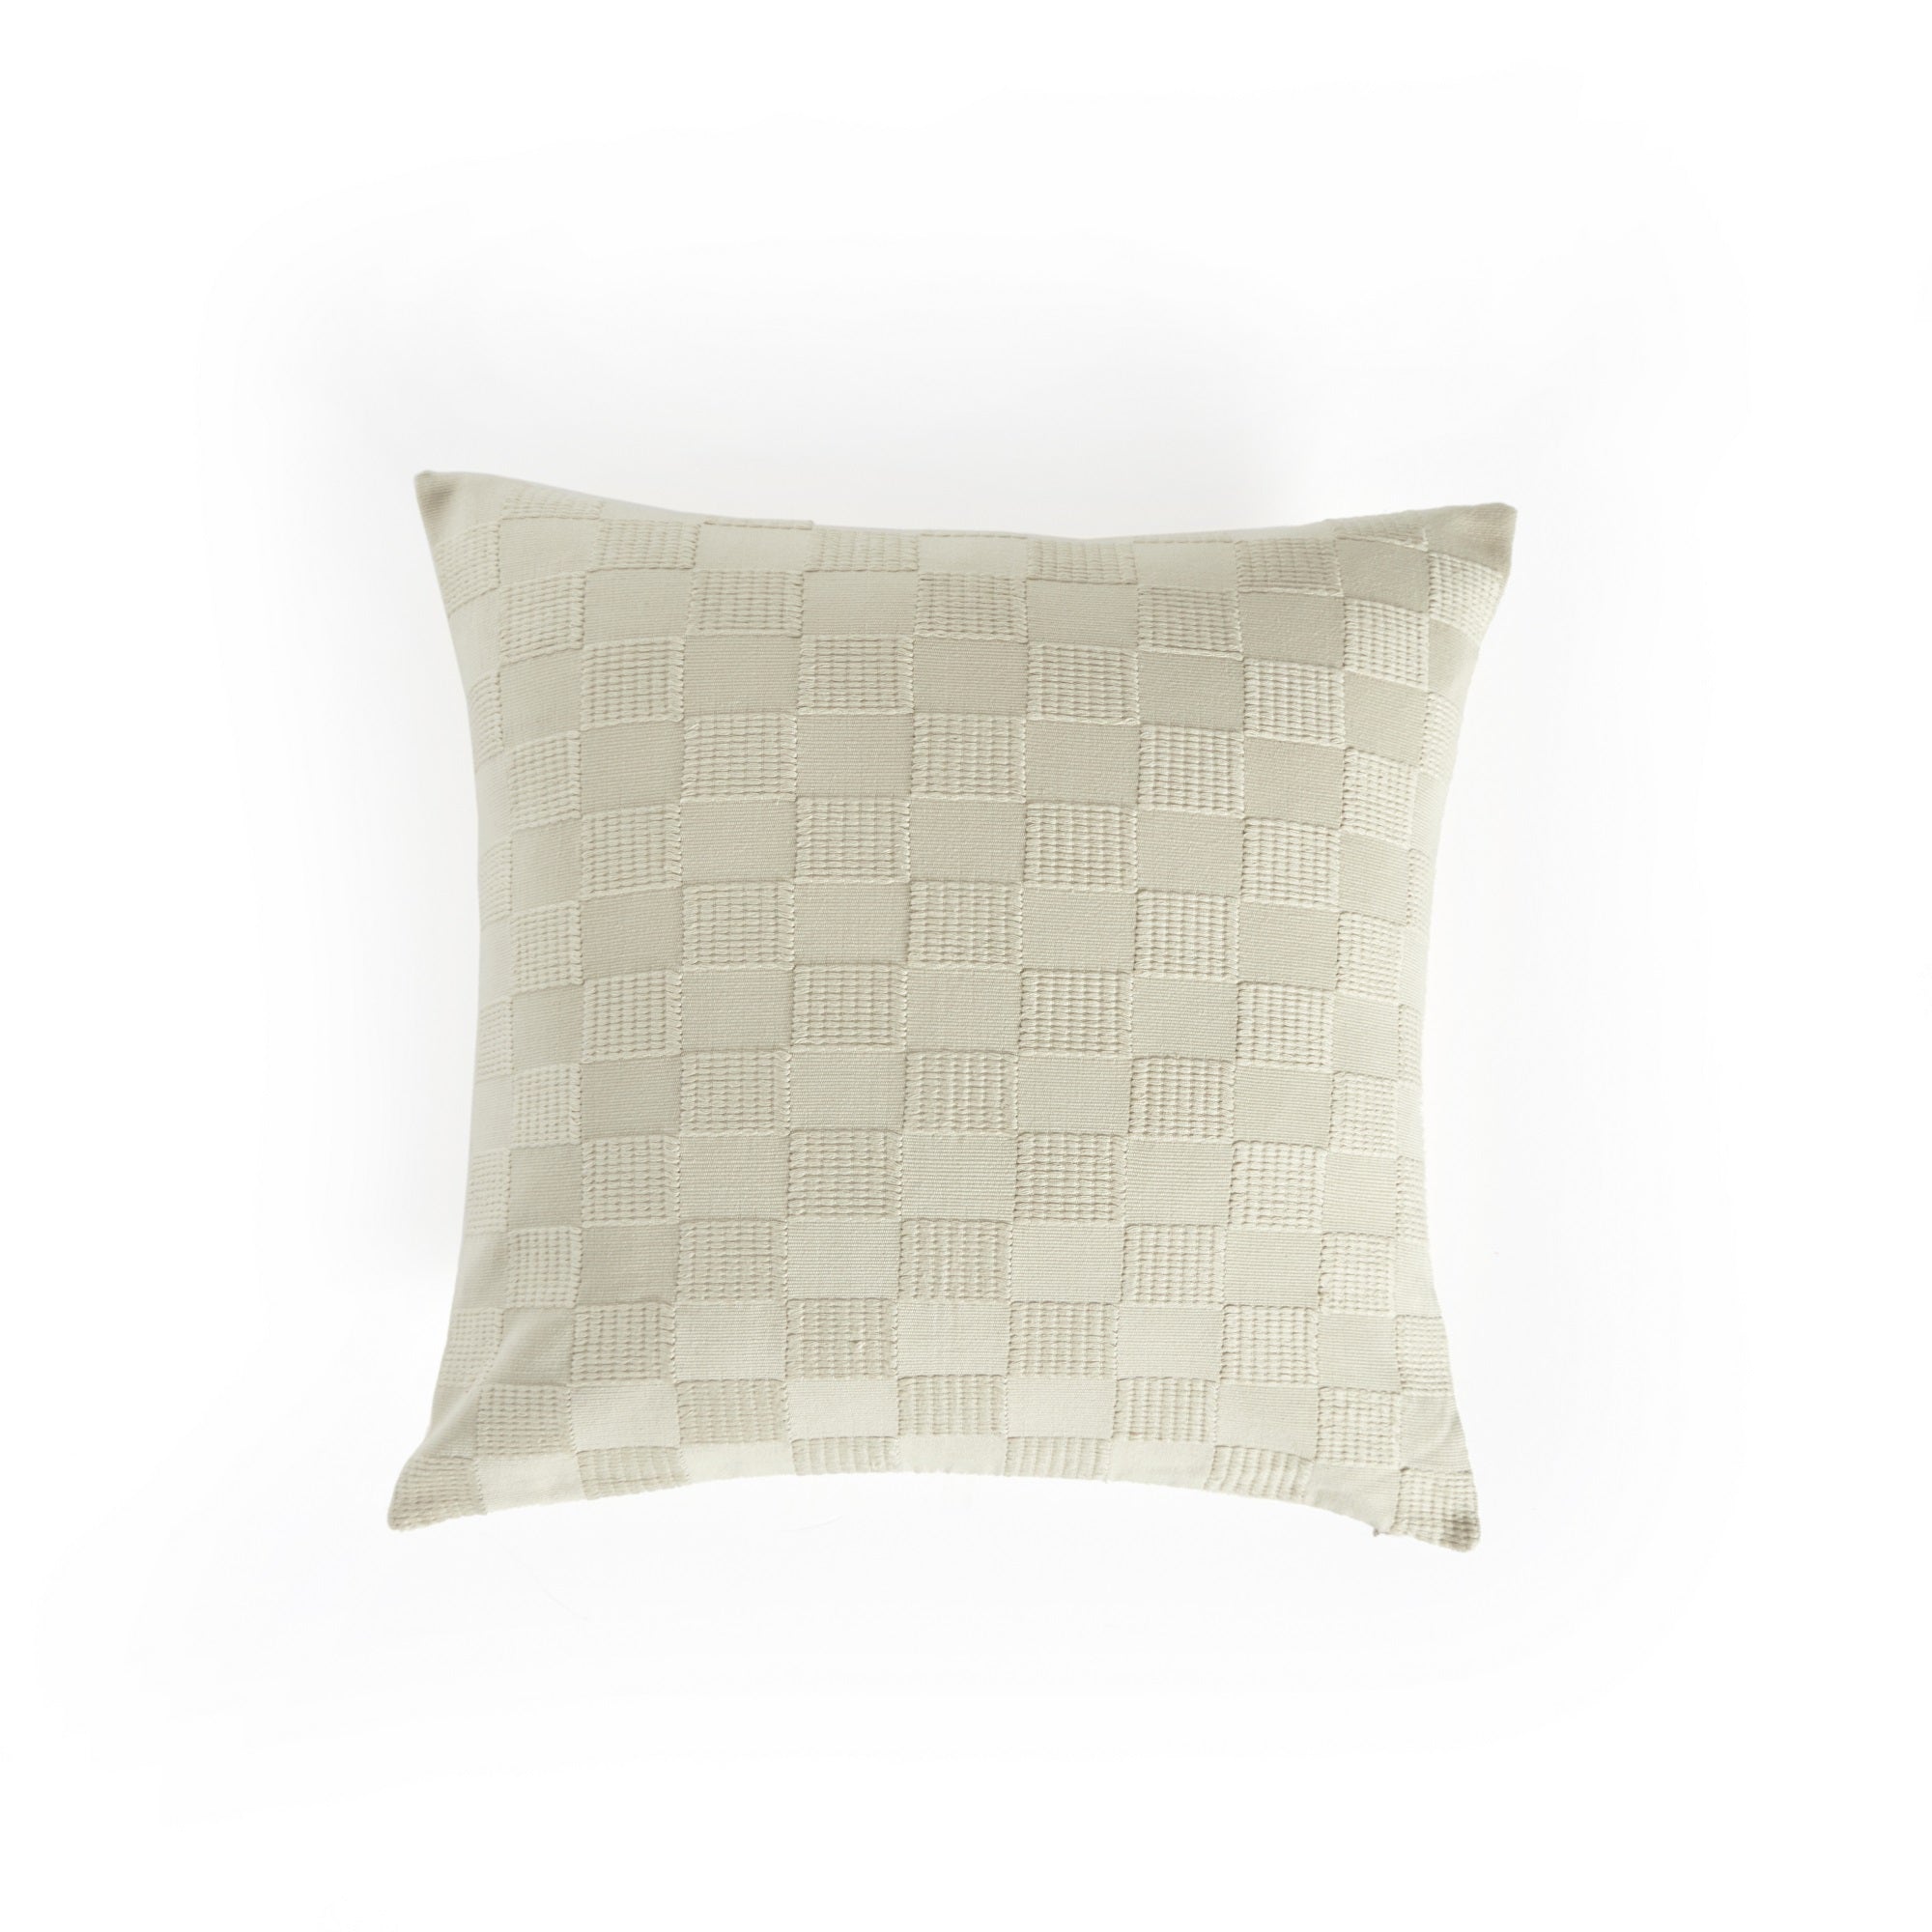 Dorian Handwoven Checked Pillow